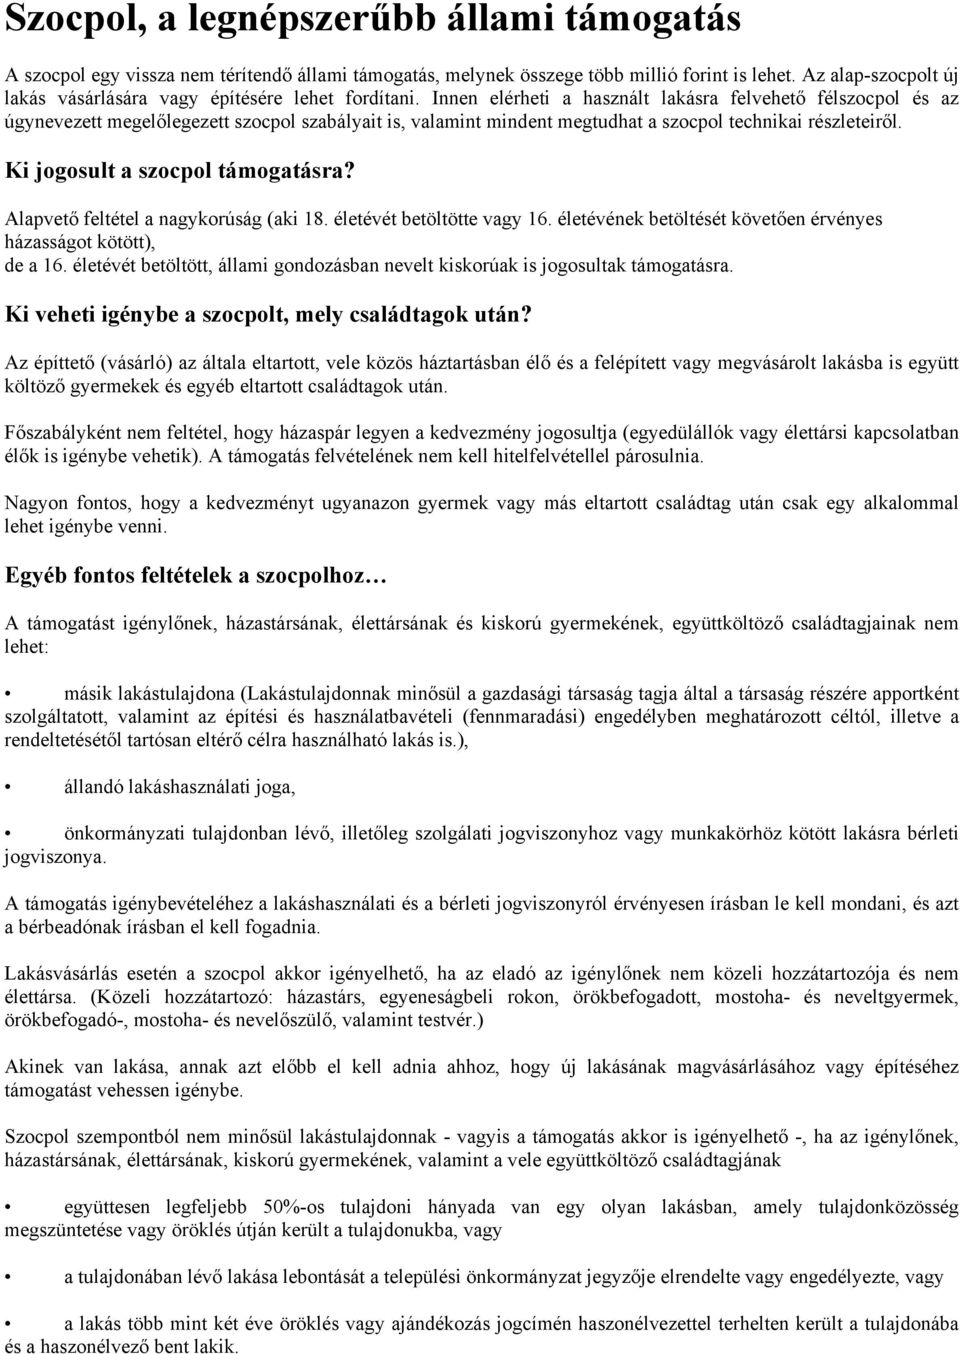 Szocpol, a legnépszerűbb állami támogatás - PDF Free Download